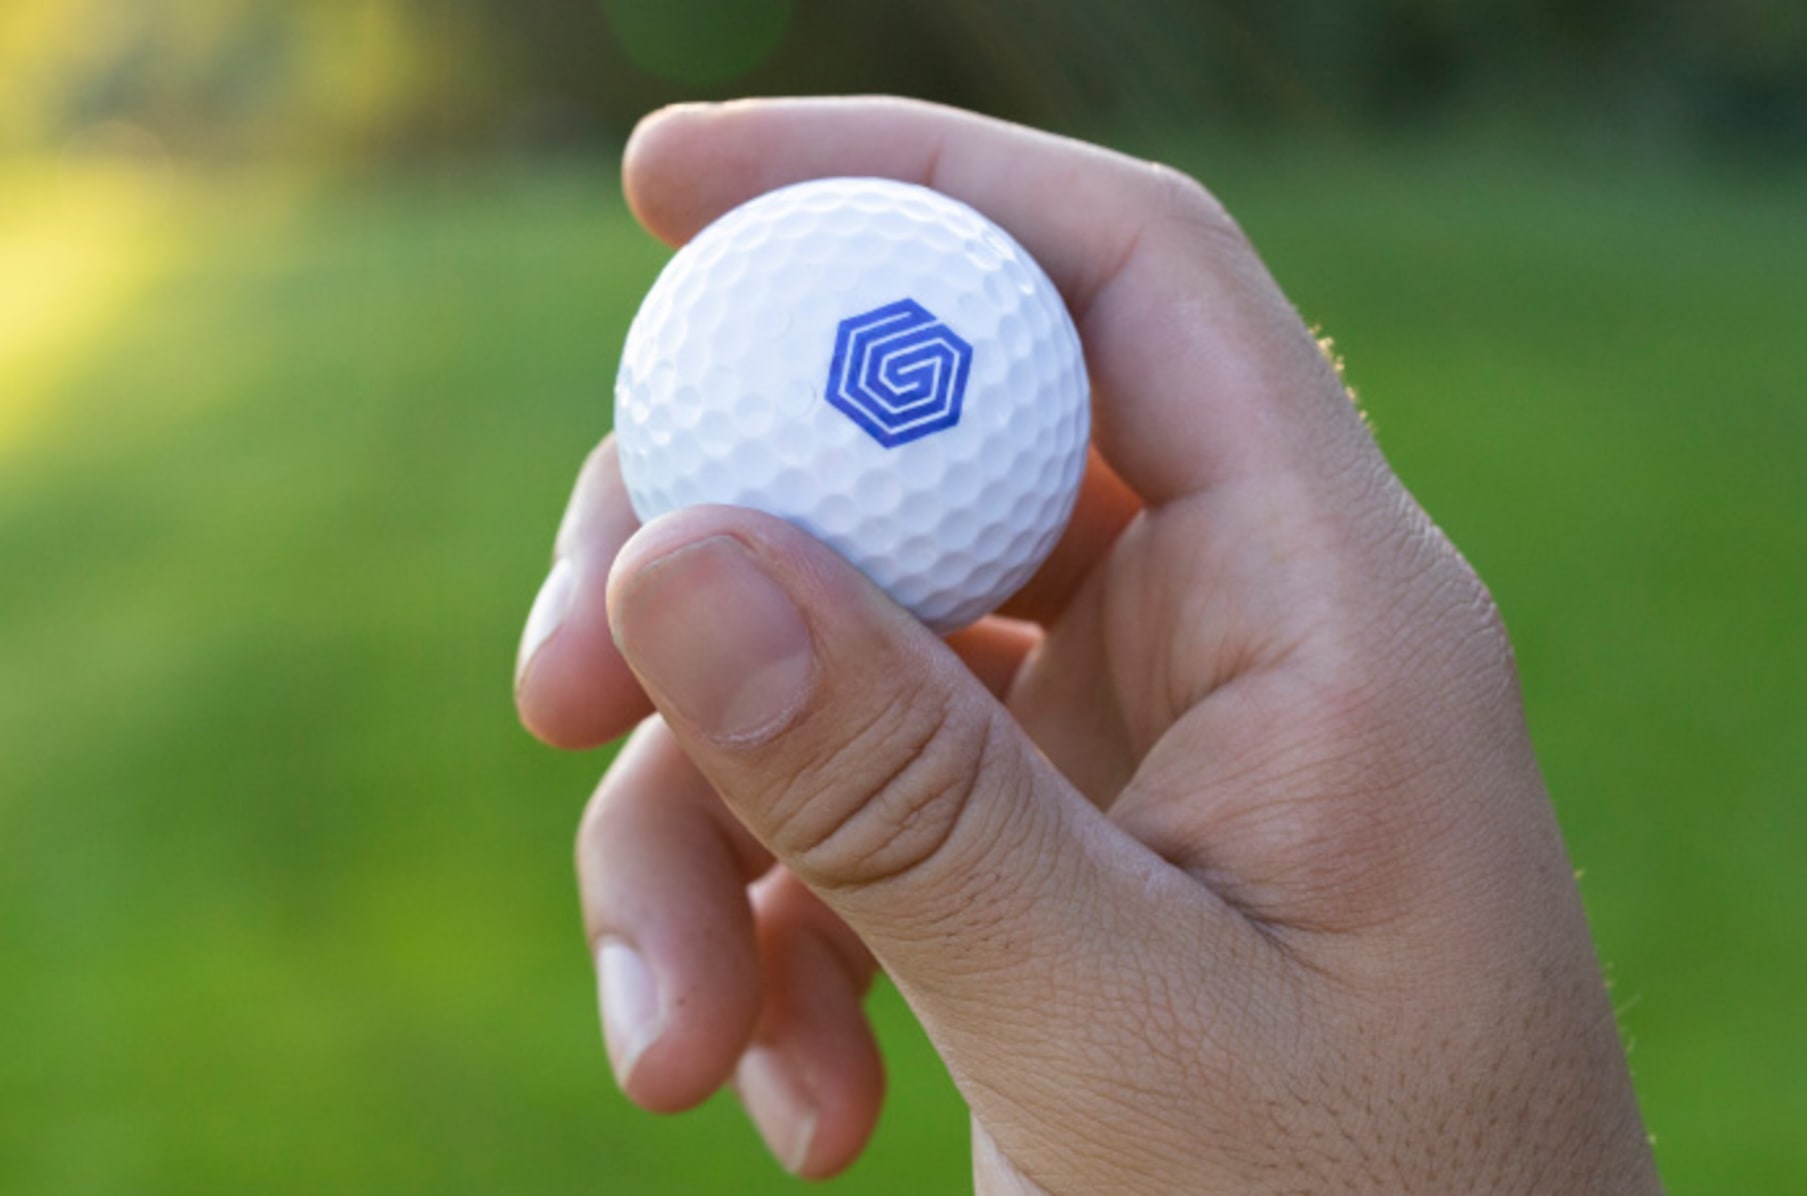 Zware vrachtwagen Methode vriendelijke groet Graff Golf: The World's First Smart Golf Ball | Indiegogo